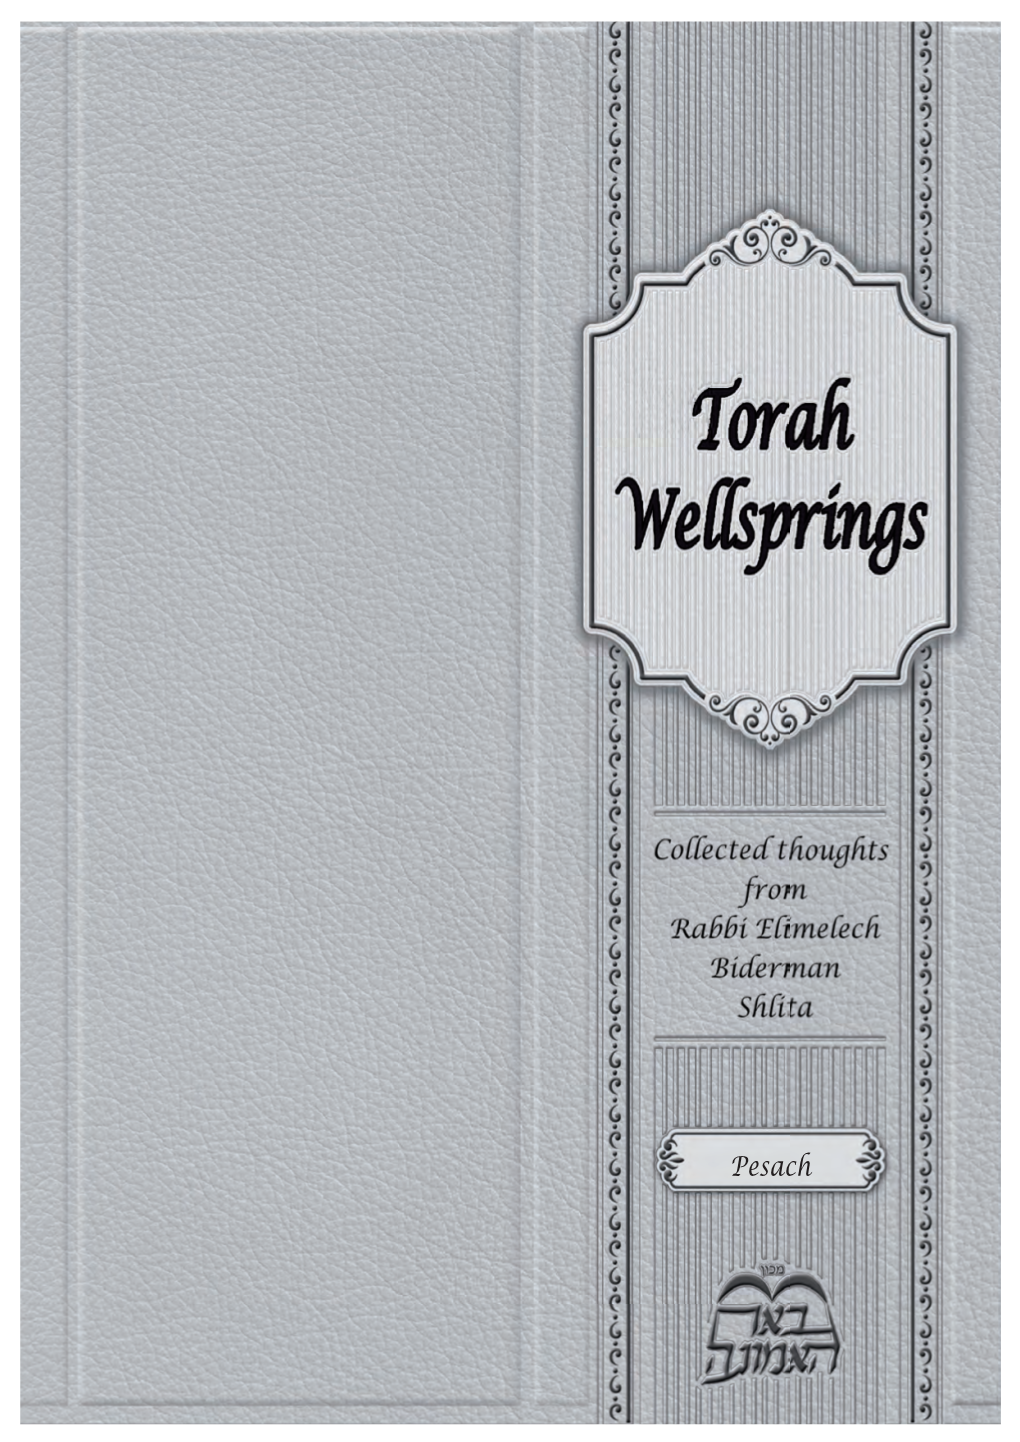 Torah Wellsprings A4.Indd